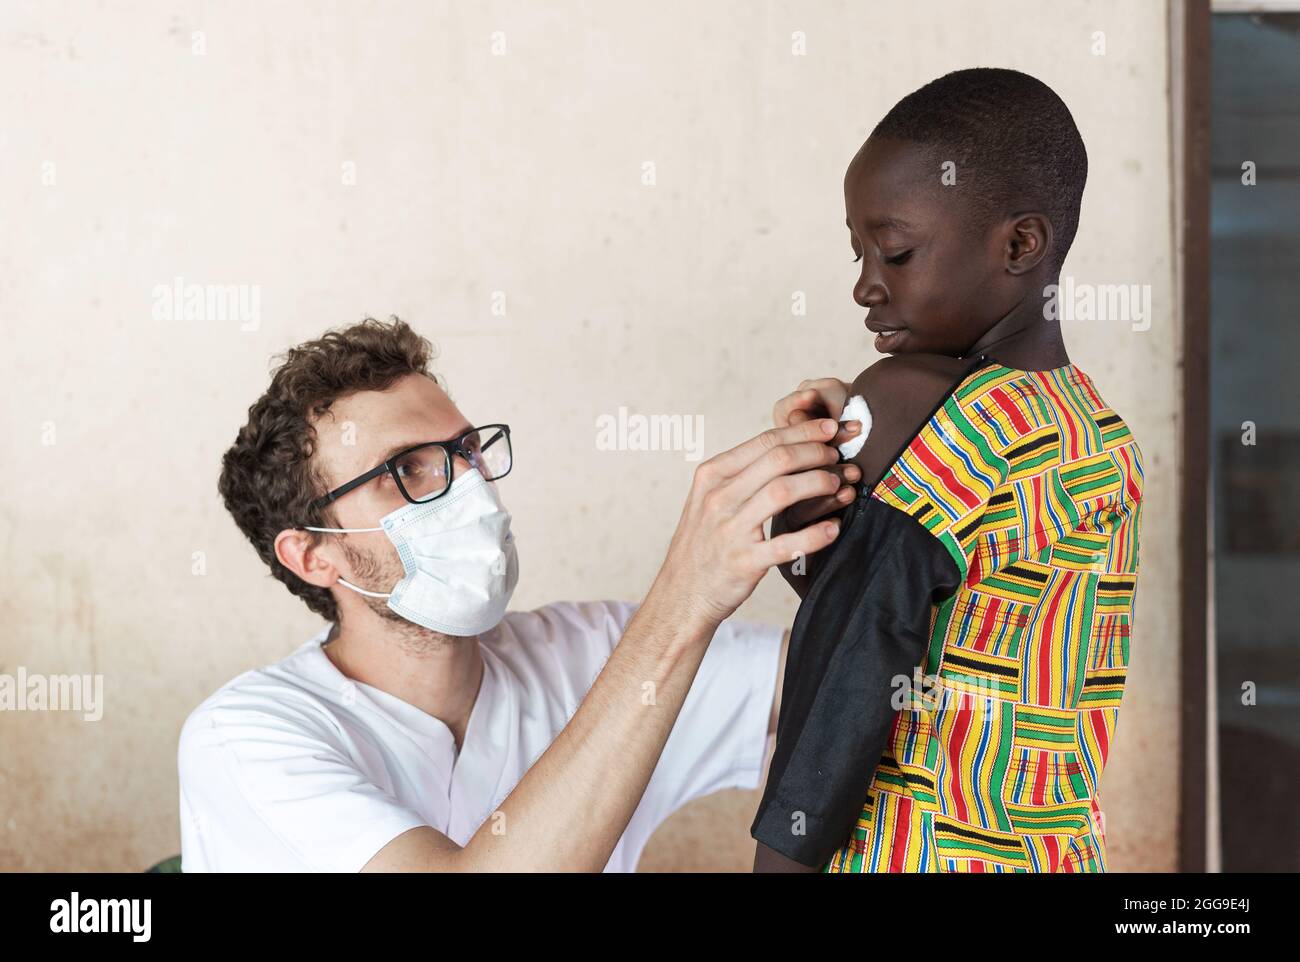 Weißer Arzt mit Gesichtsmaske und Brille, der nach der Impfung einen Wattebausch auf die Injektionsstelle am Arm eines kleinen afrikanischen Patienten legt Stockfoto